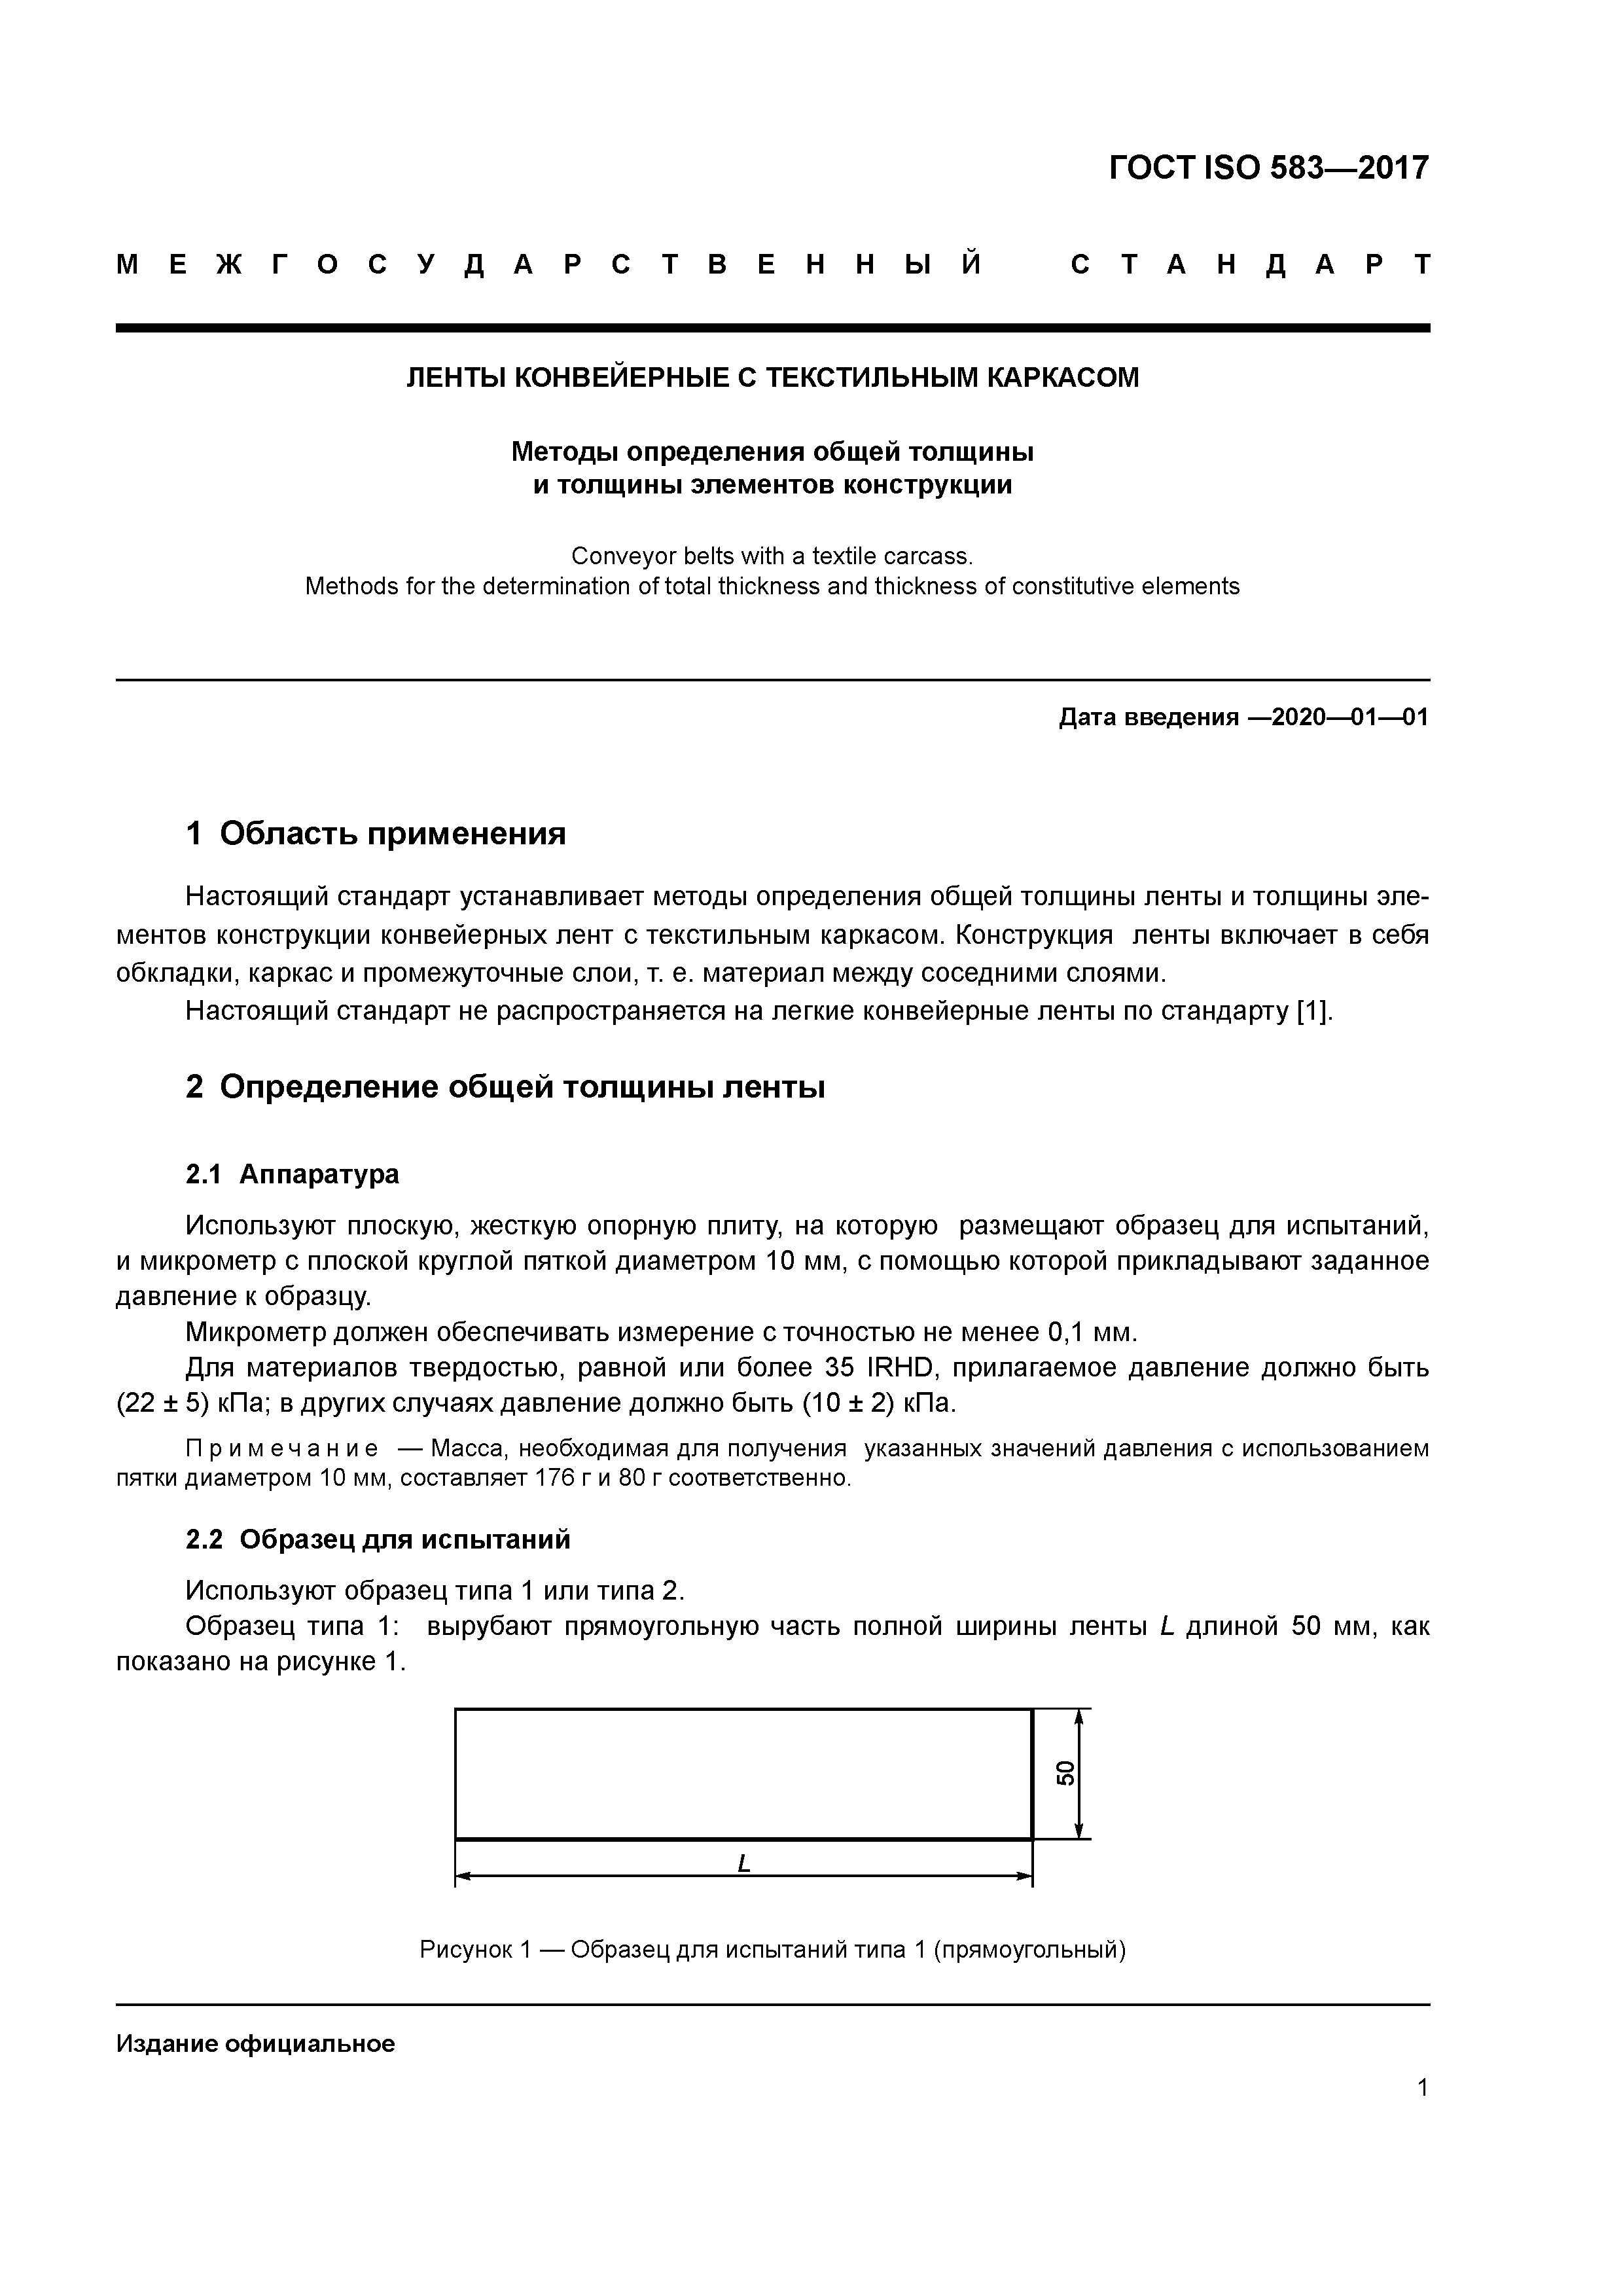 ГОСТ ISO 583-2017